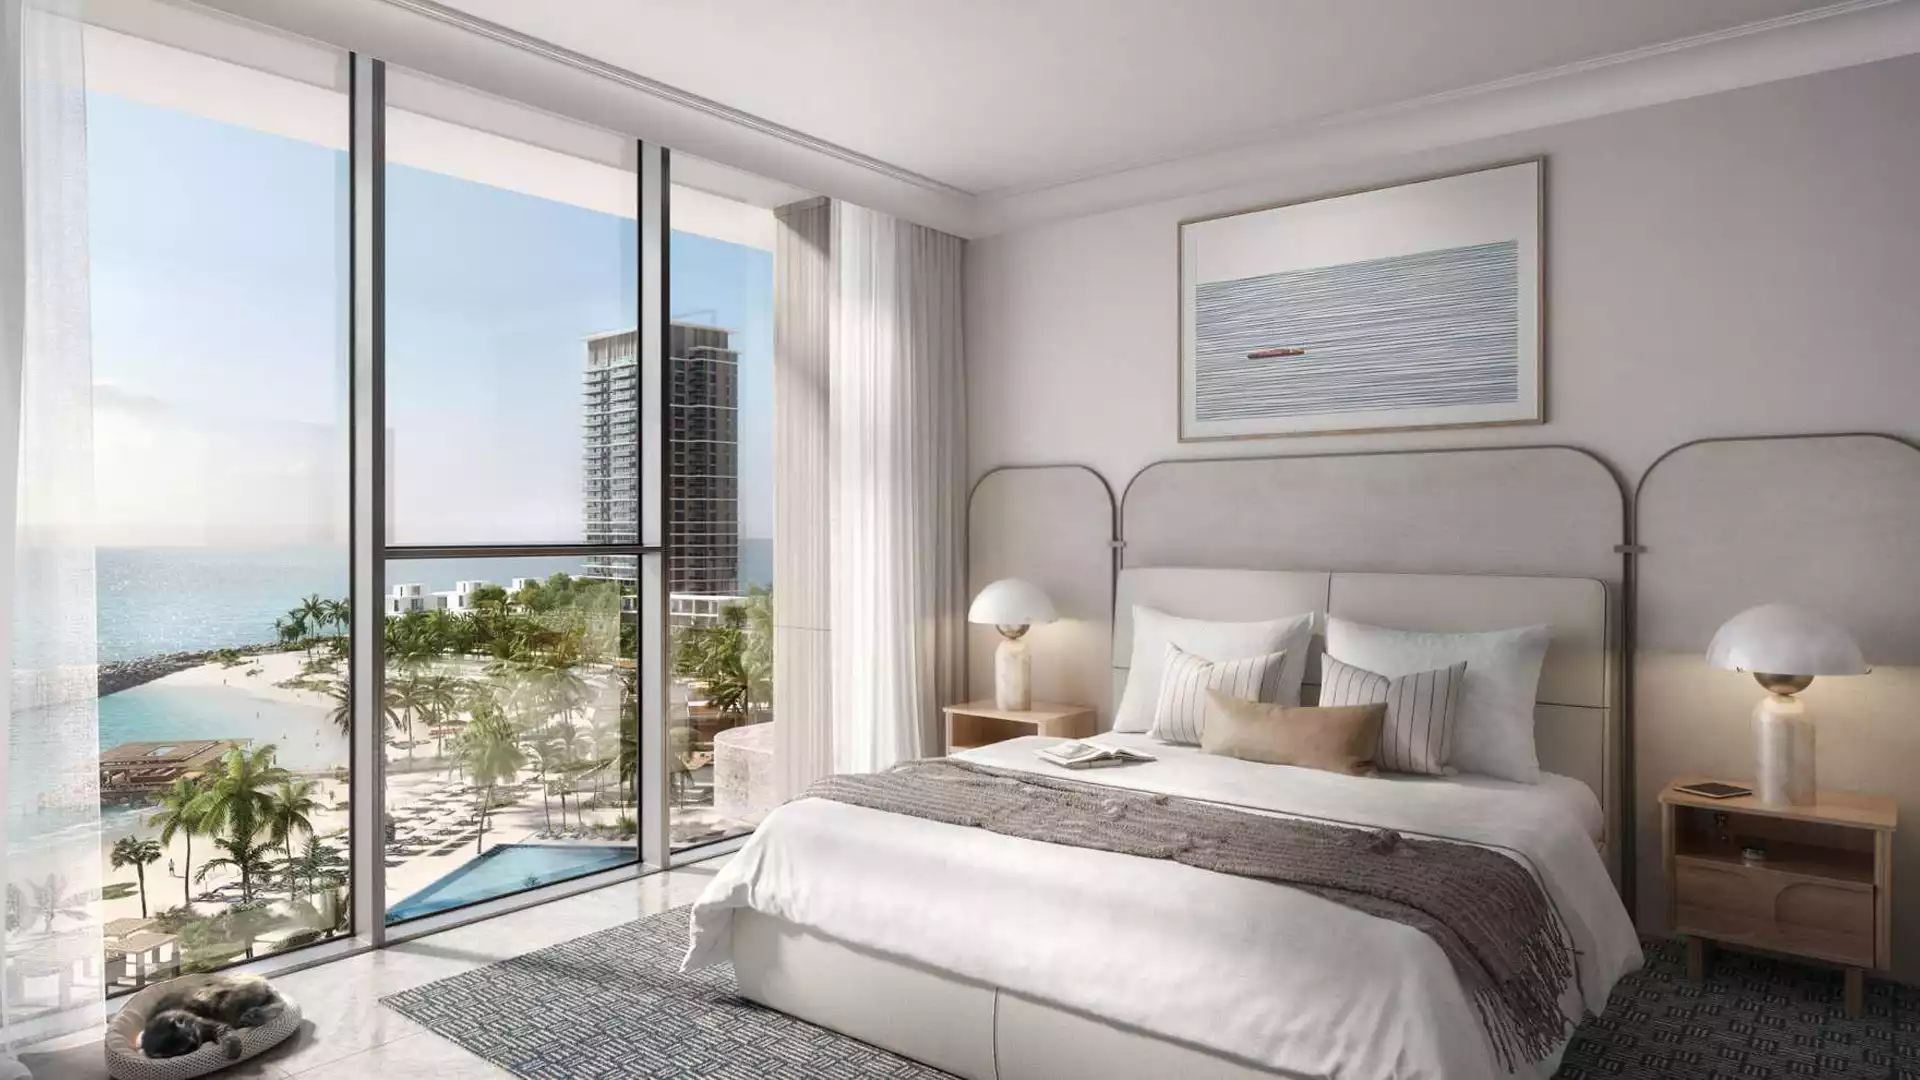 Edge-Realty-شقة من 3 غرف نوم على شاطئ البحر للبيع في العنوان رزيدنسز